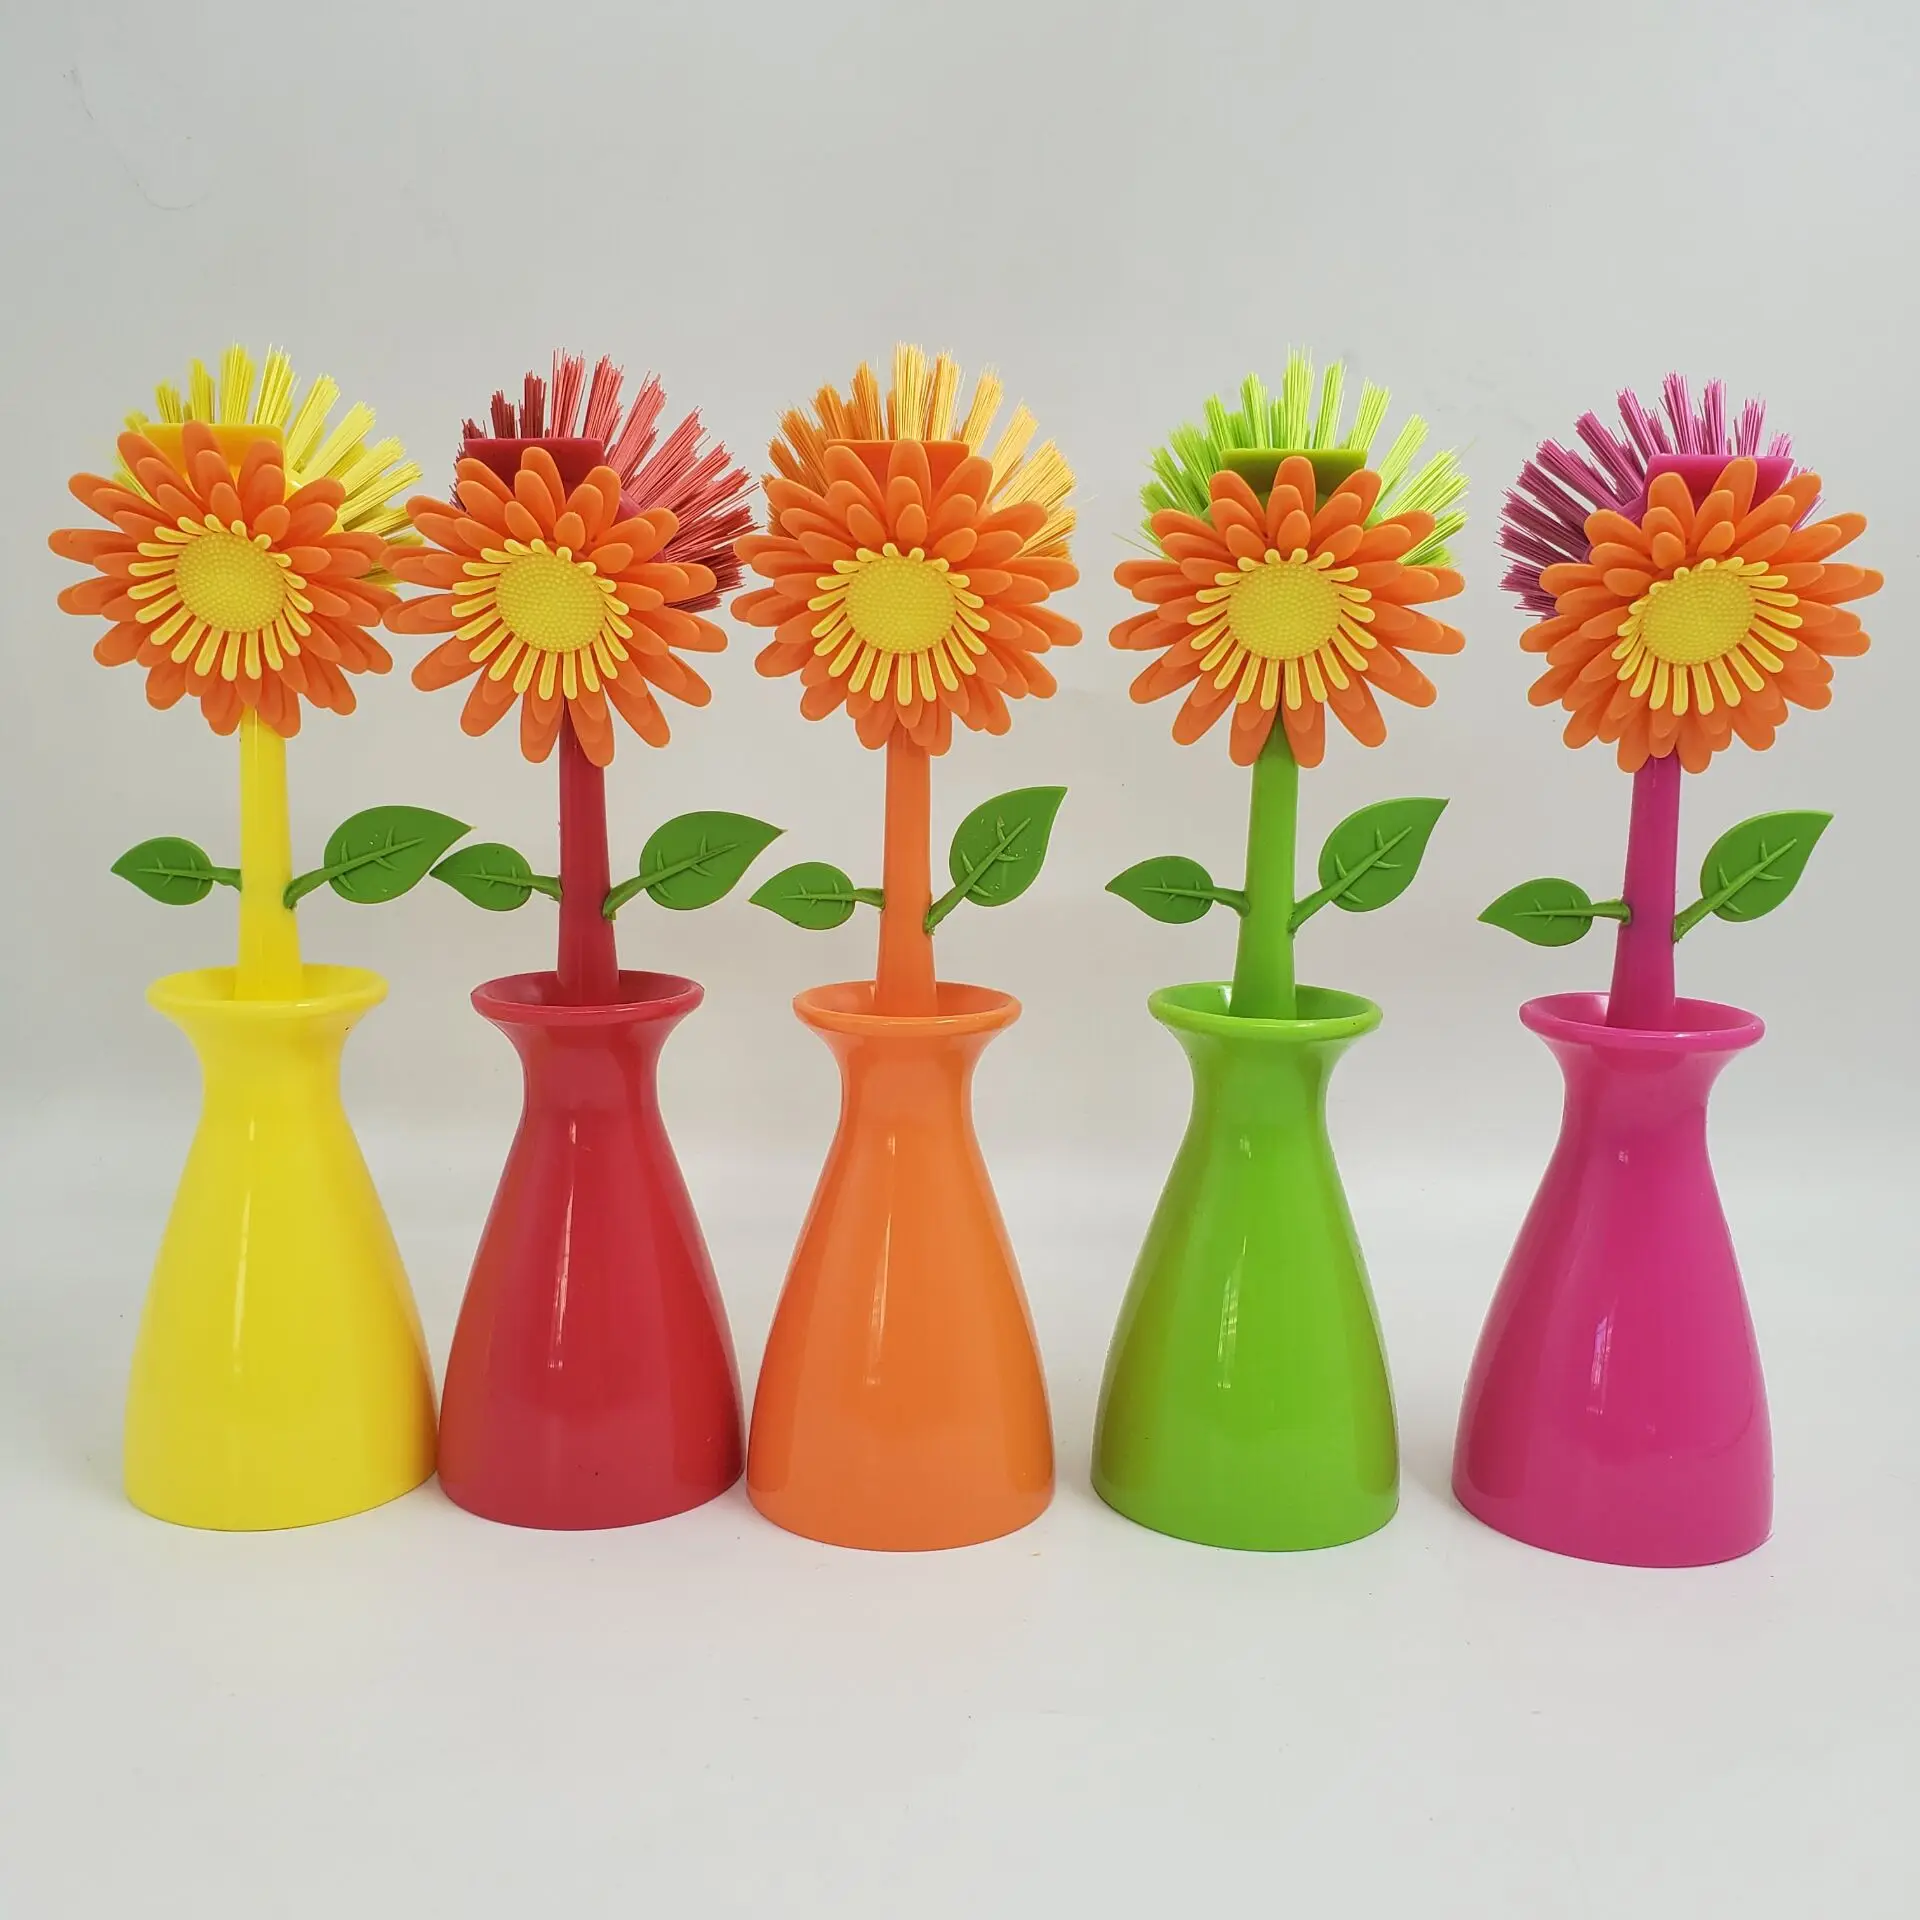  Vigar Flower Power Orange Dish Brush with Vase, 10-Inches,  Orange, Green : Home & Kitchen